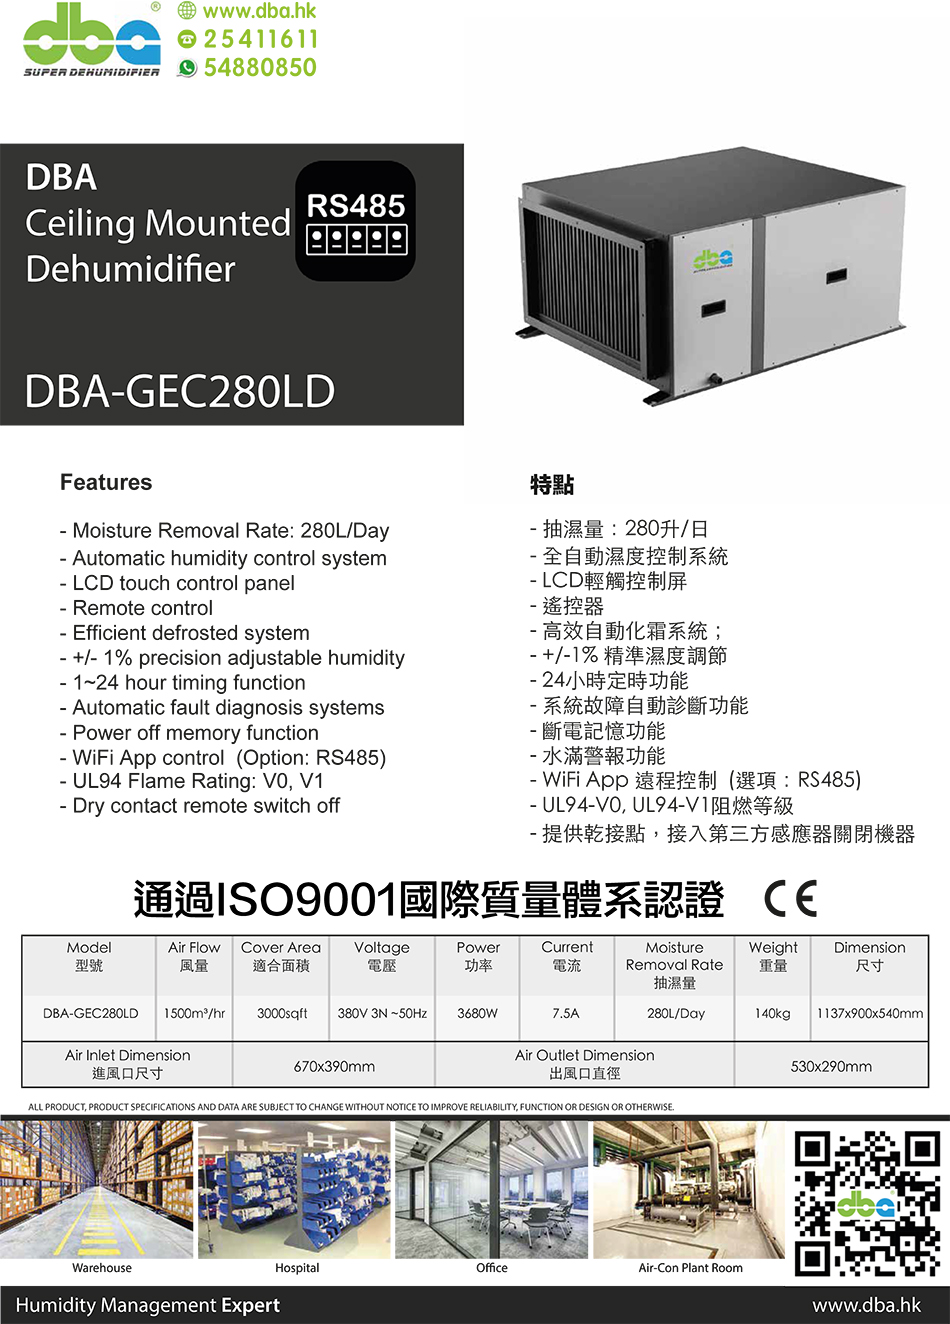 DBA大型全⾃動天花抽濕機供應及安裝⼯程DBA-GEC280LD-適合安裝在長期潮濕貨倉